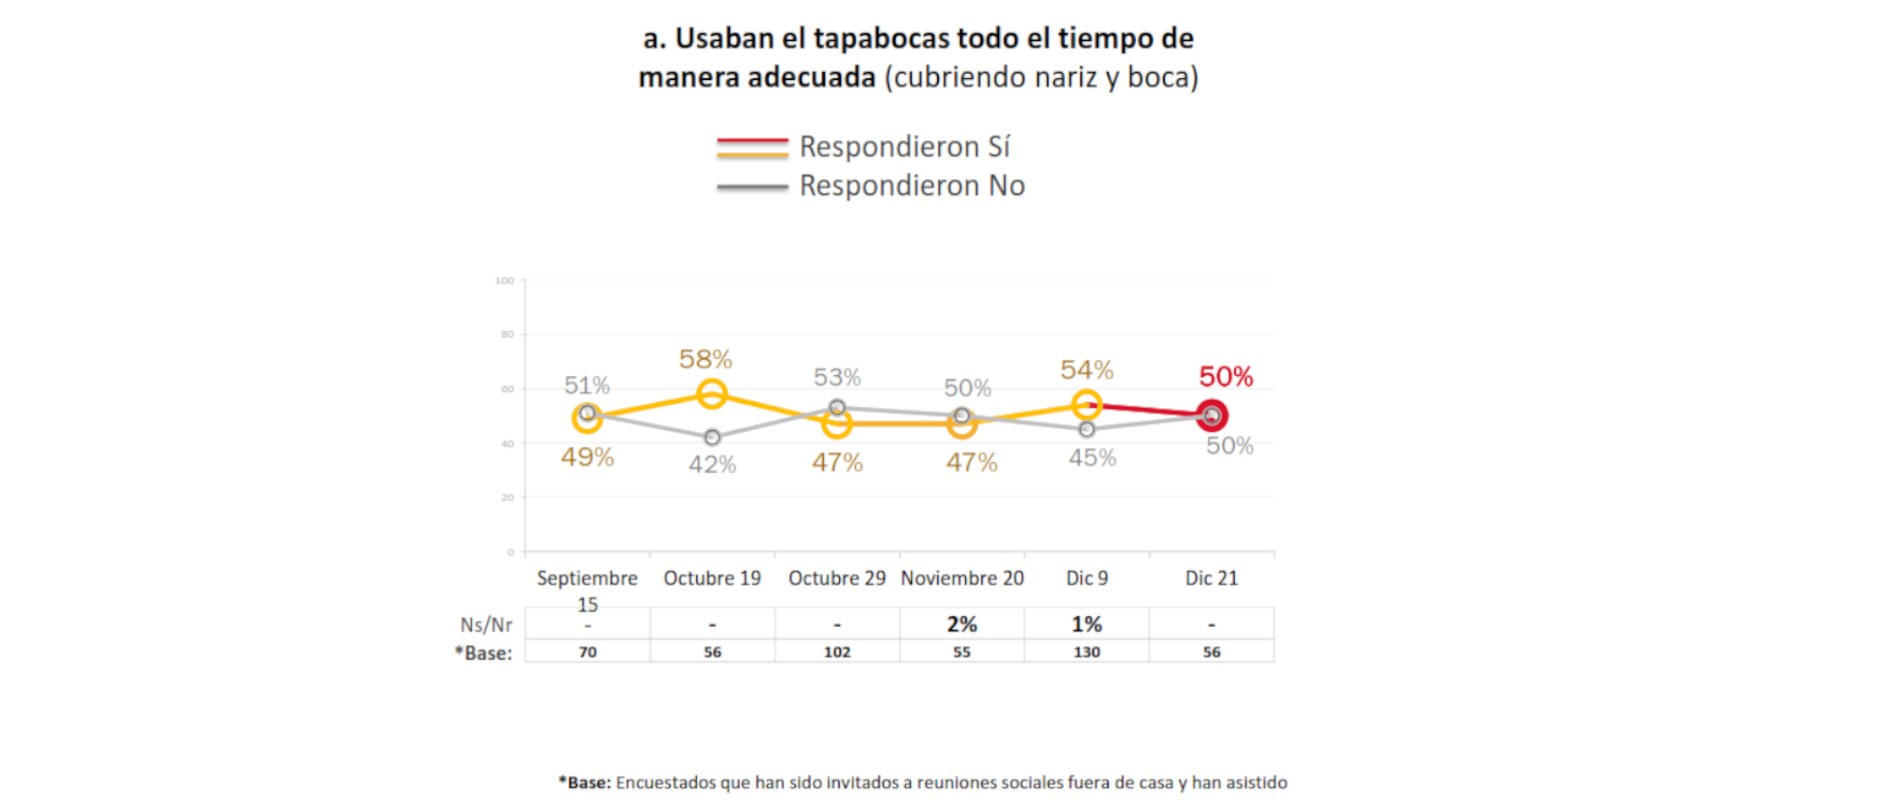 El 50 por ciento de los encuestados usó mal el tapabocas en las reuniones de diciembre. Imagen: Gráfico elaborado por la Alcaldía de Bogotá